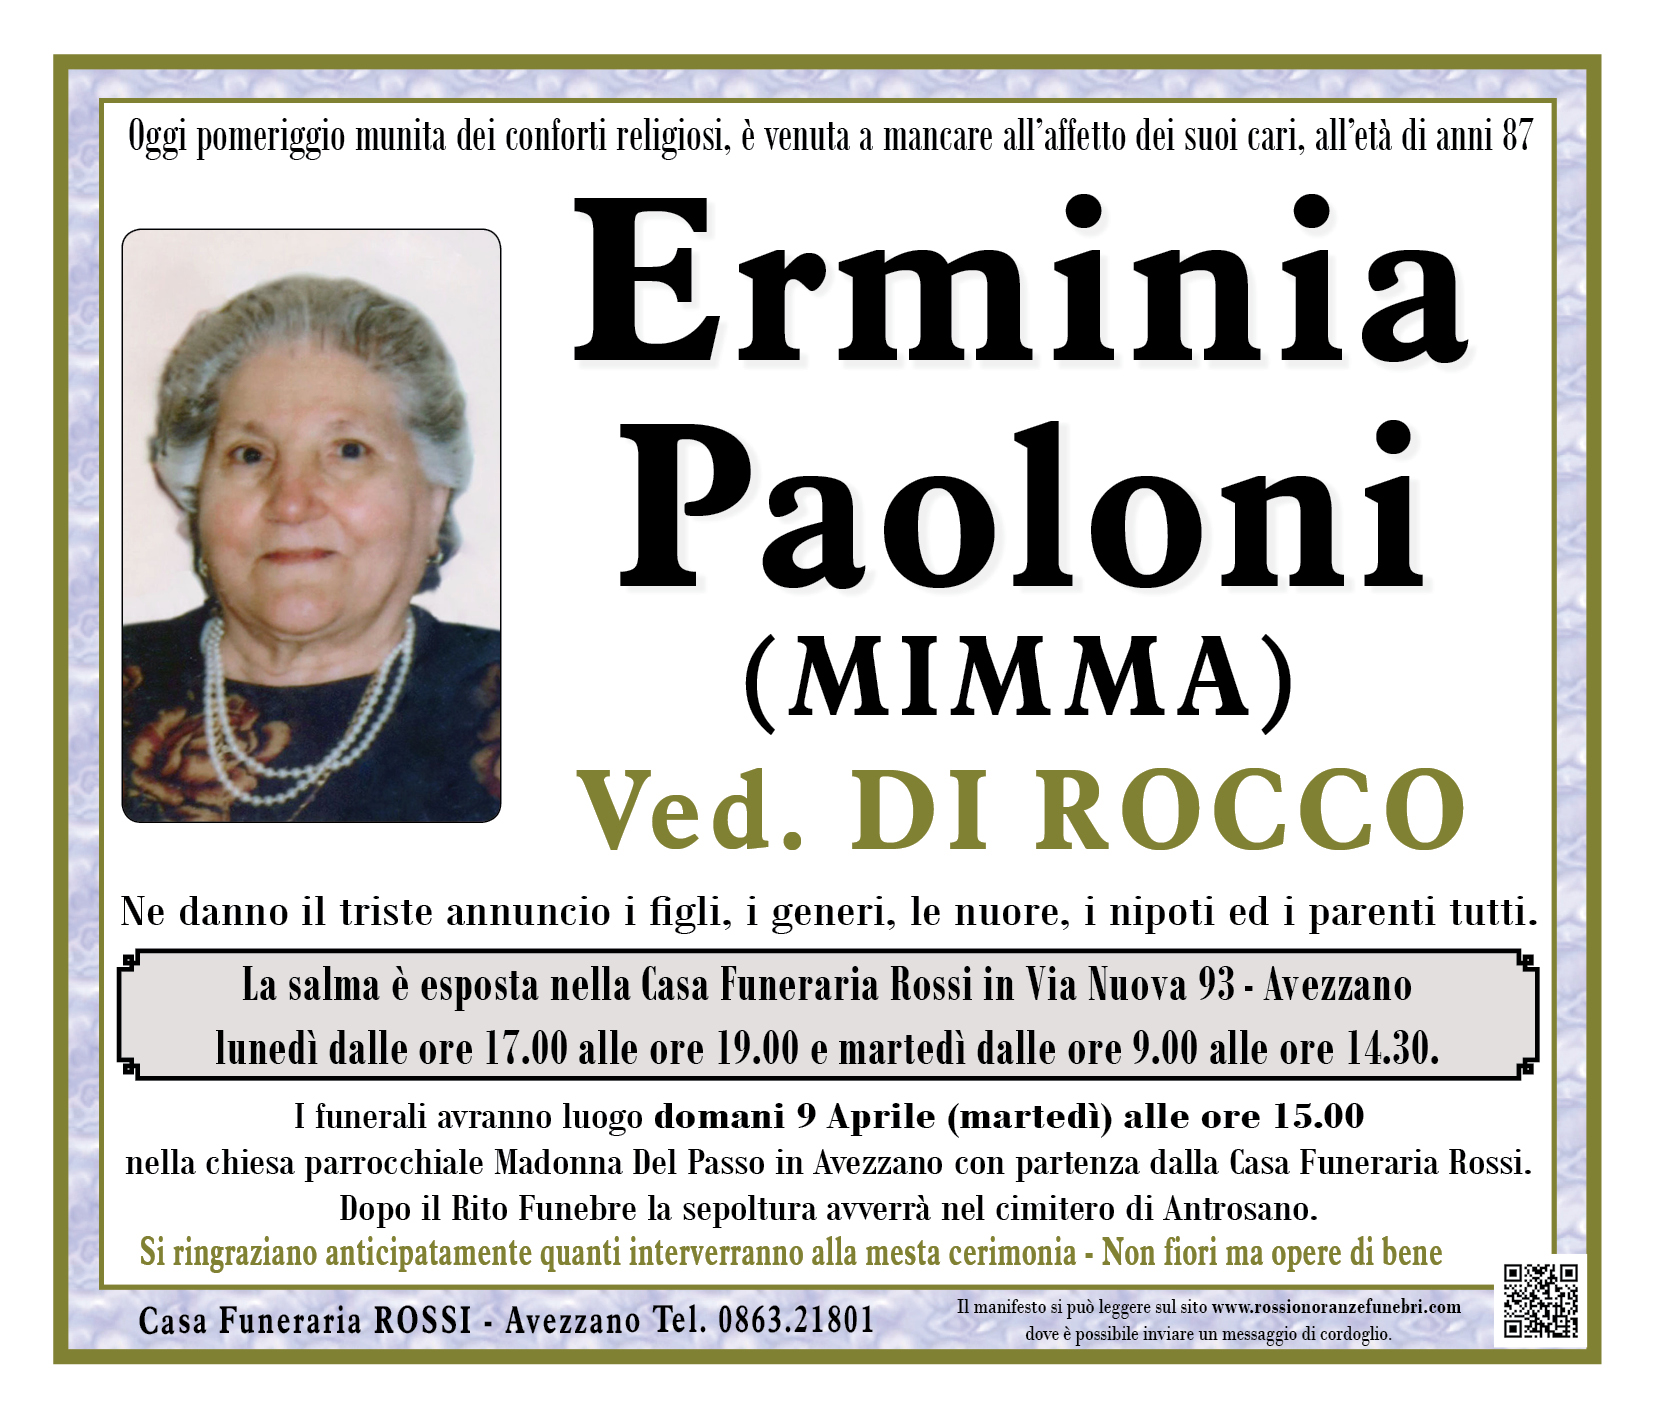 Erminia Paoloni